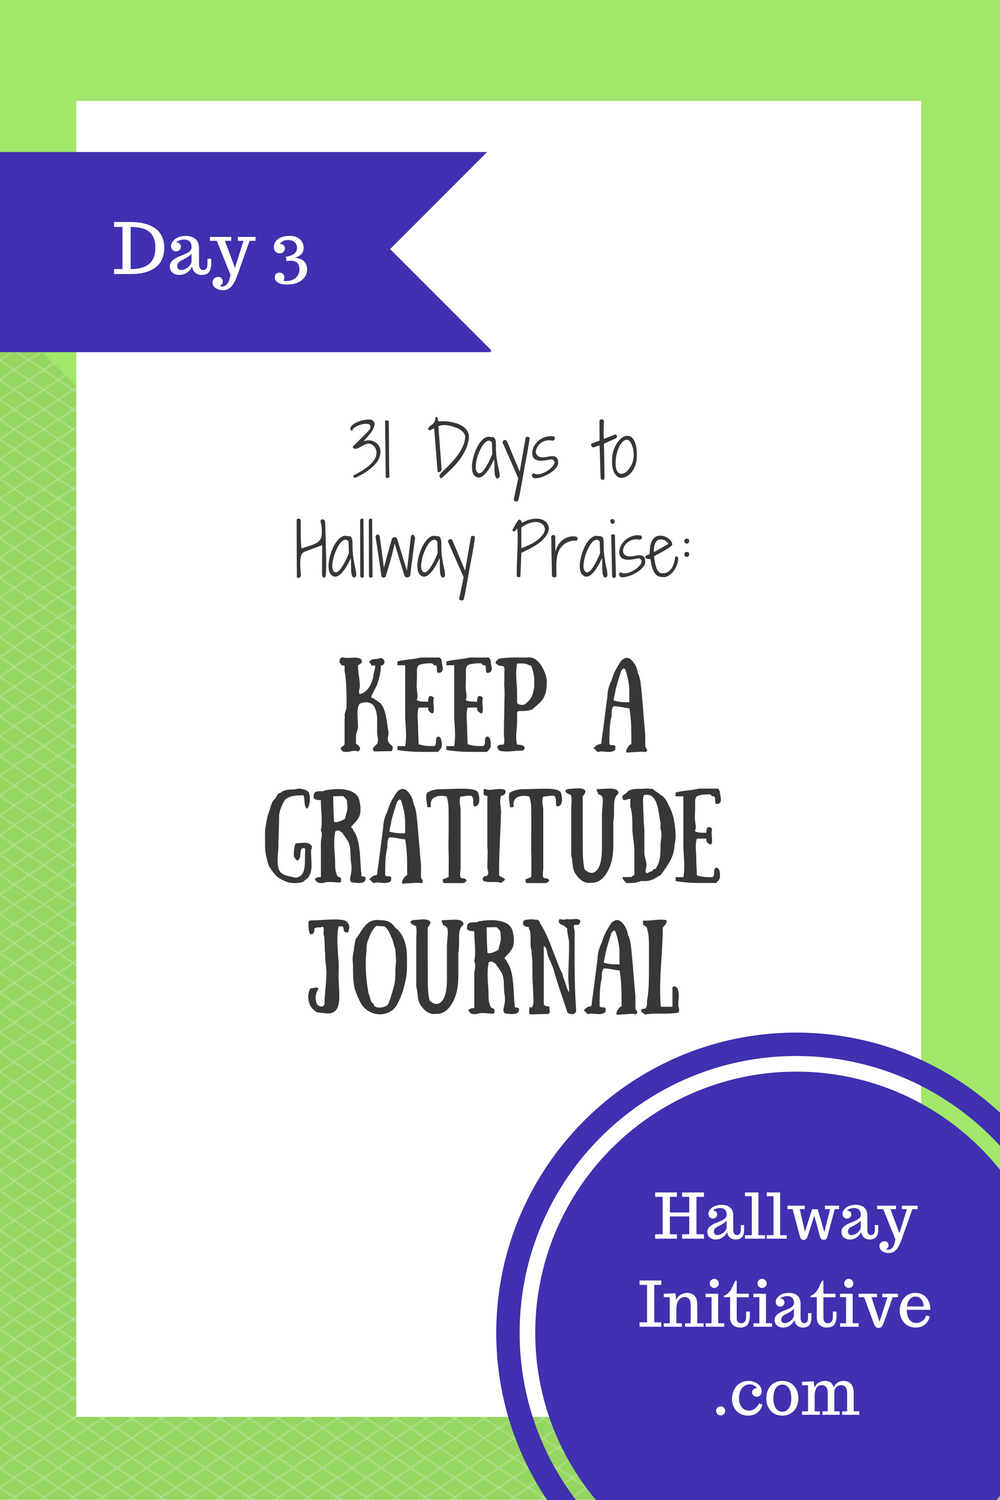 Day 3: keep a gratitude journal